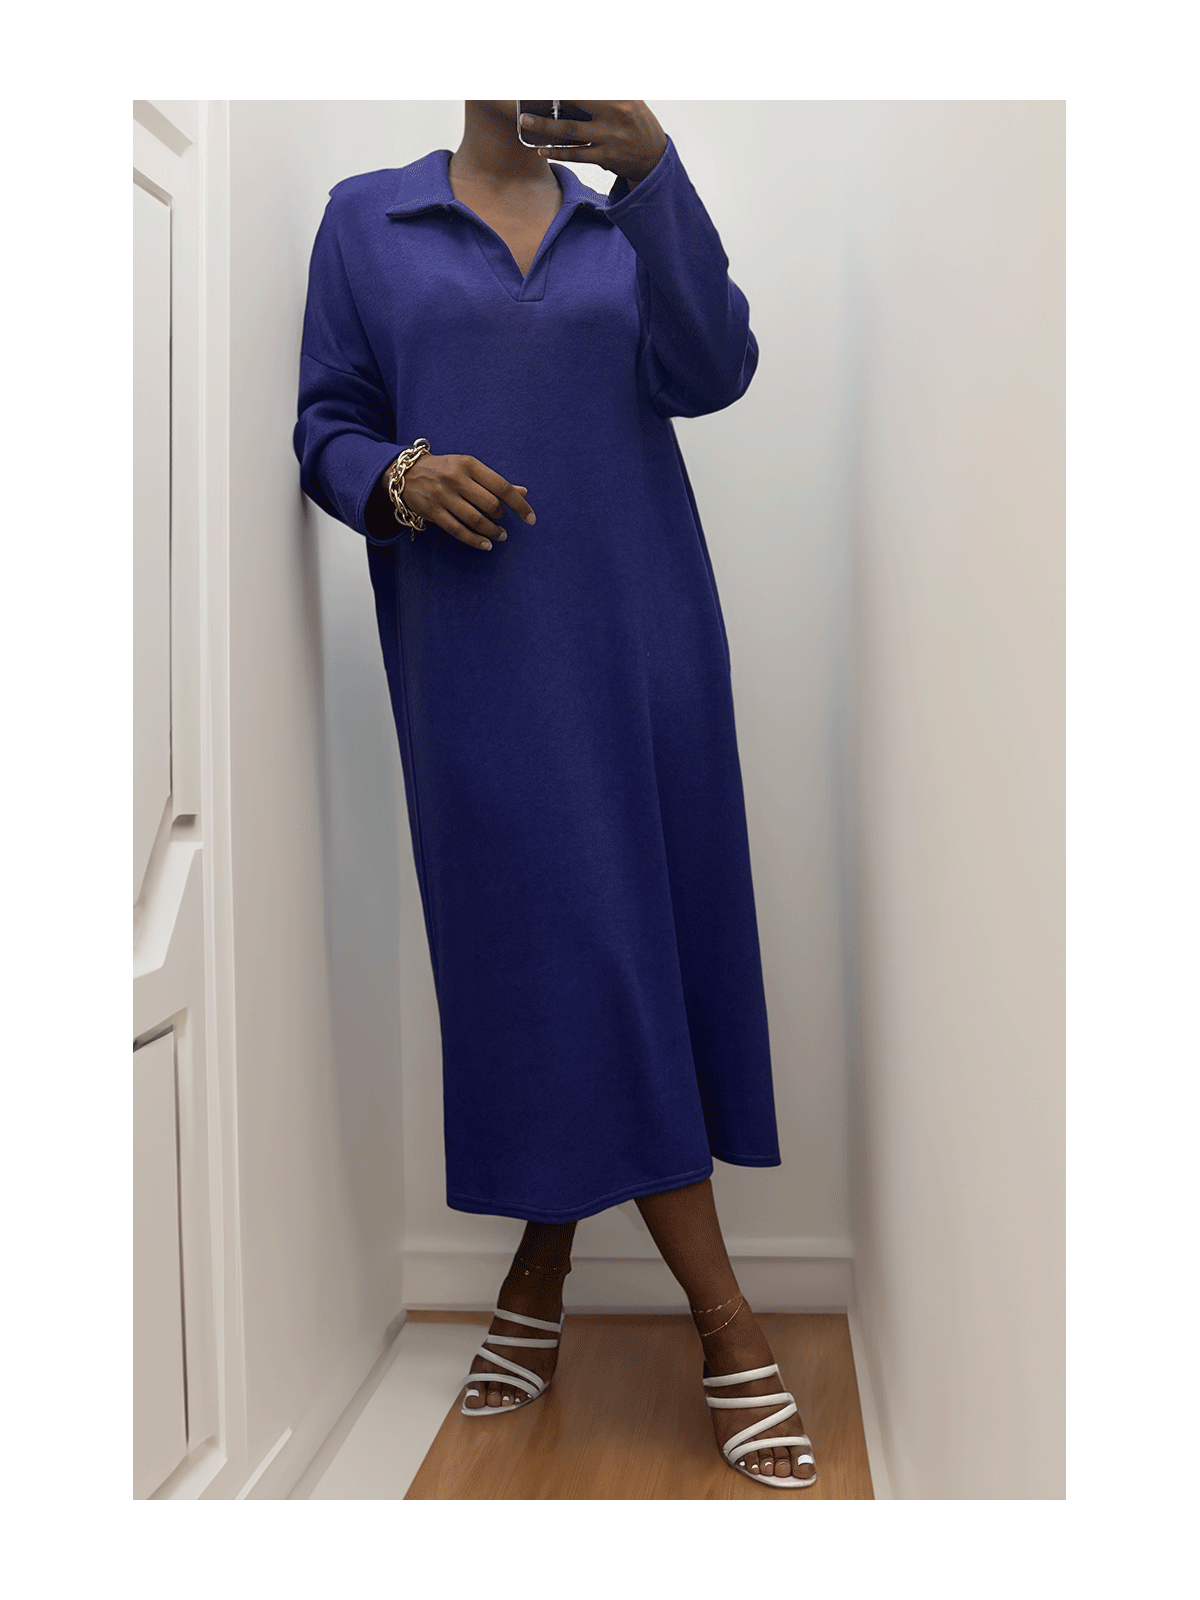 Longue robe épaisse col chemise en violet - 3